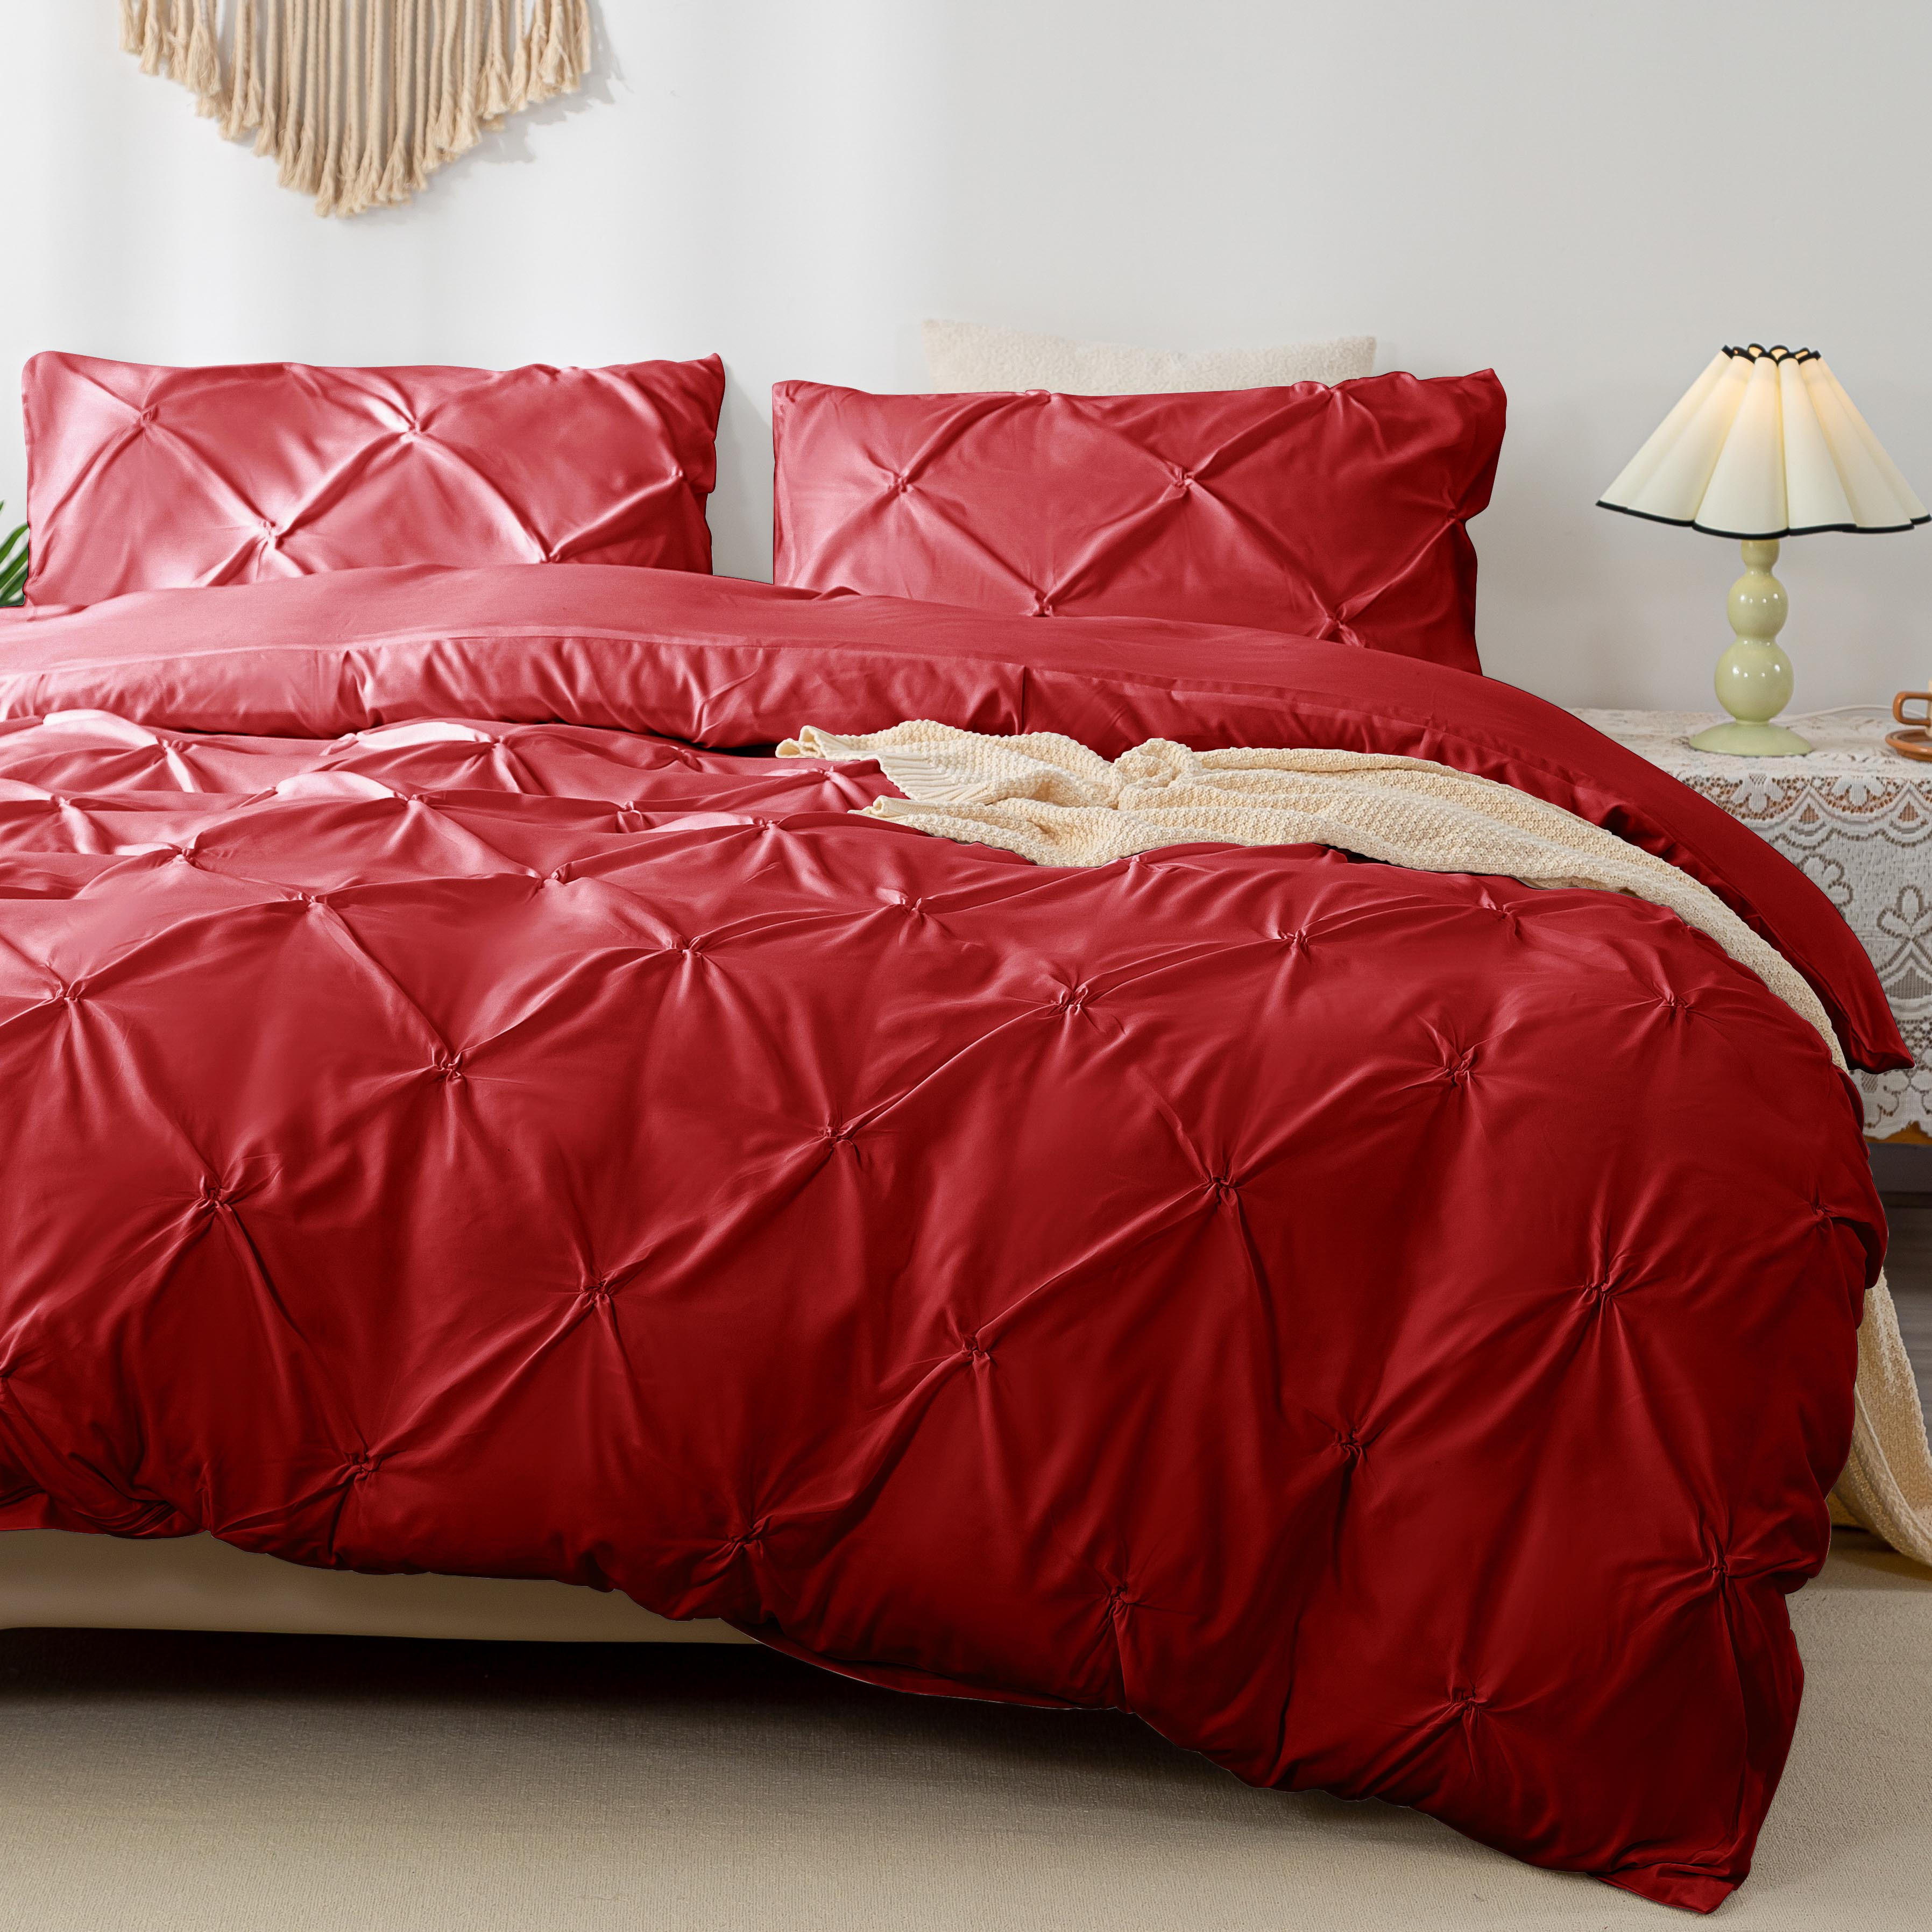 Juego de cama de 3 unidades, cobertor con impresión de flores rojas, estilo  oriental jap…Ver más Juego de cama de 3 unidades, cobertor con impresión